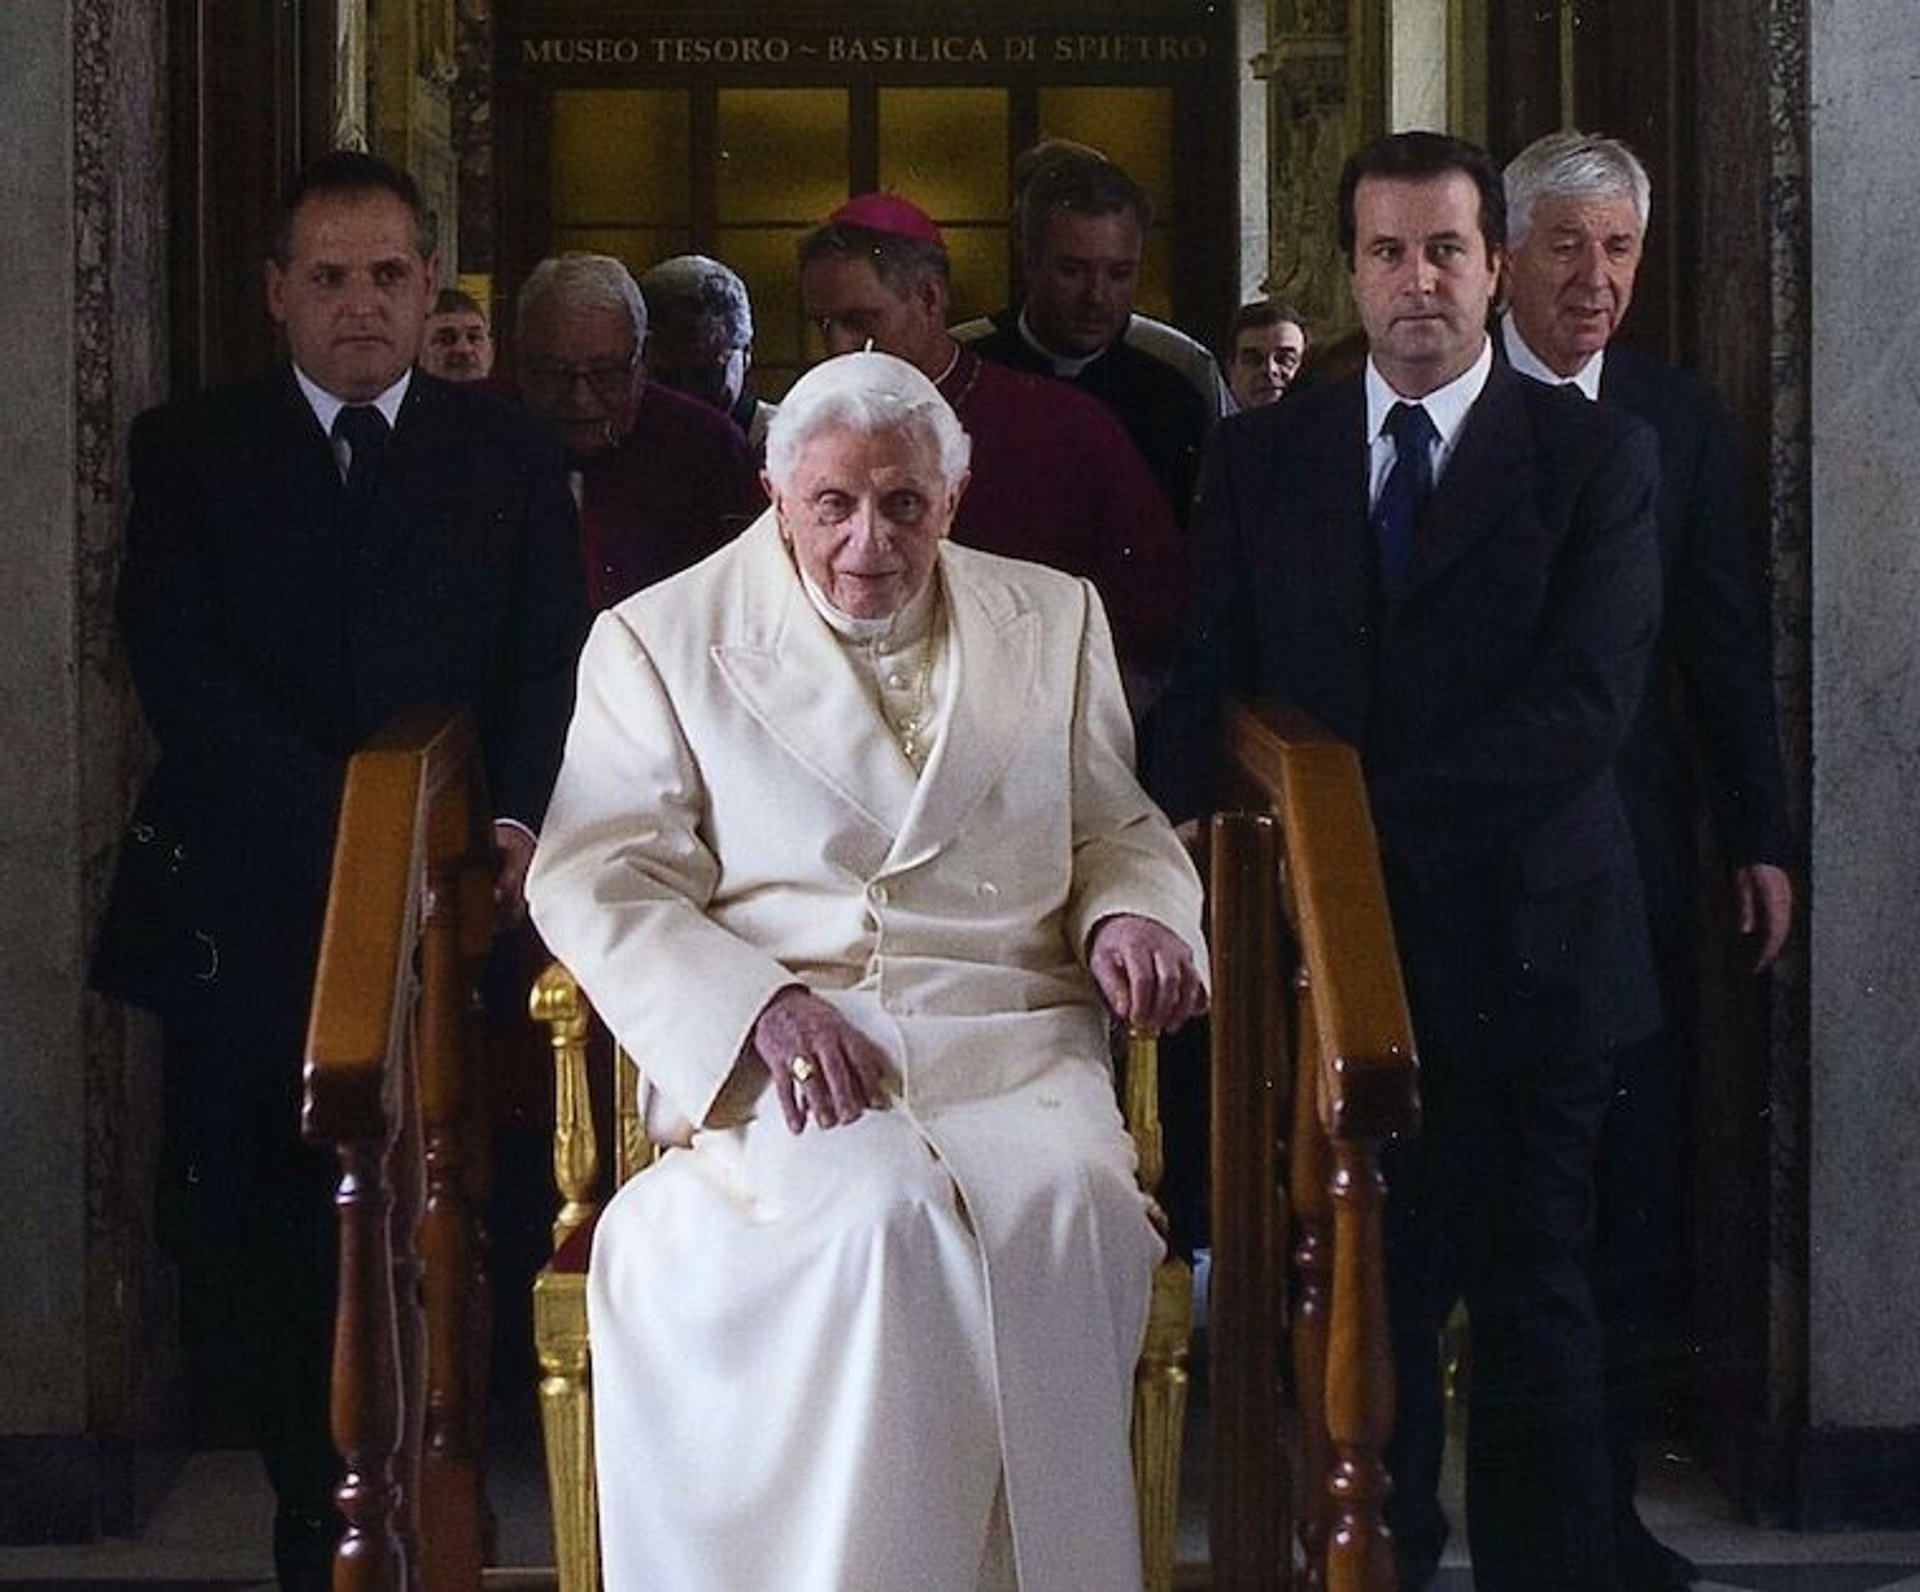 Ujawniony został list Benedykt XVI skierowany do seminarium w Częstochowie